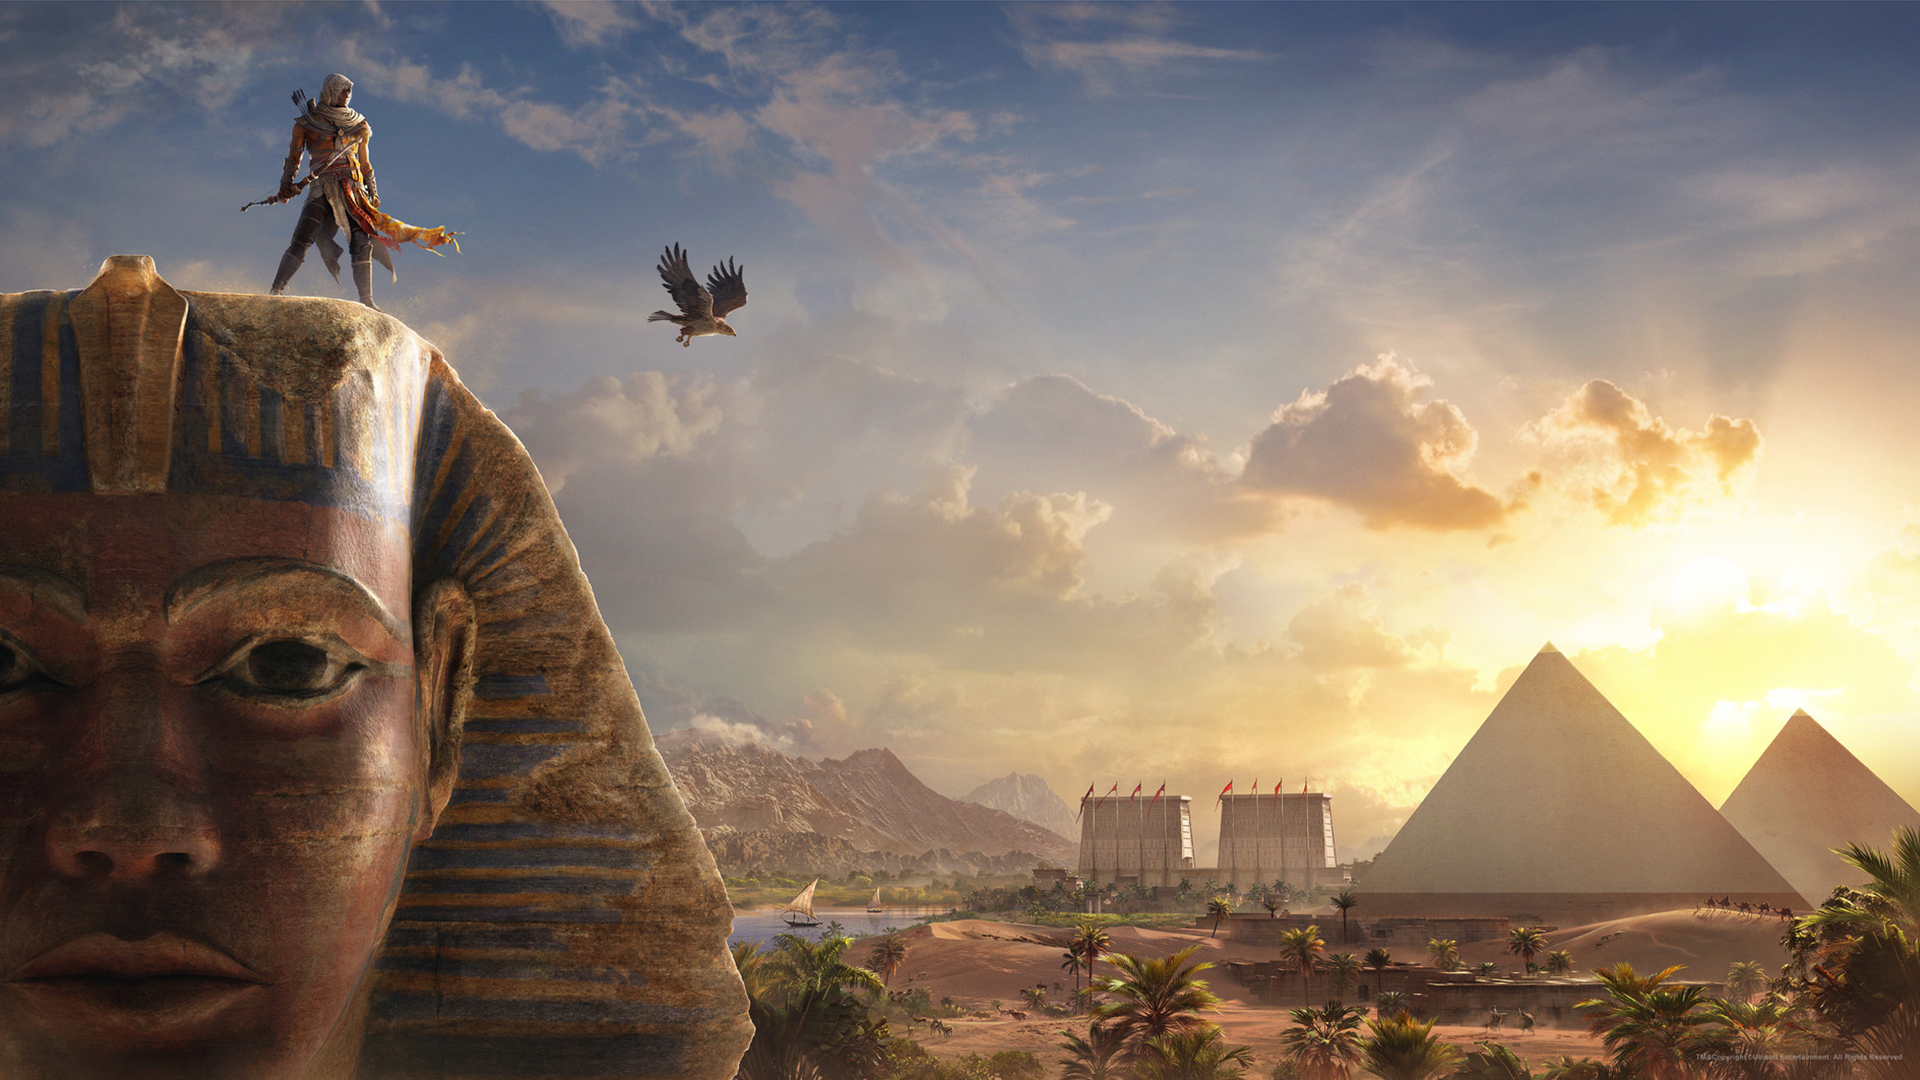 Bayek no topo do Sphynx e com vista para o Egito antigo em uma imagem promocional de Assassin's Creed Origins.